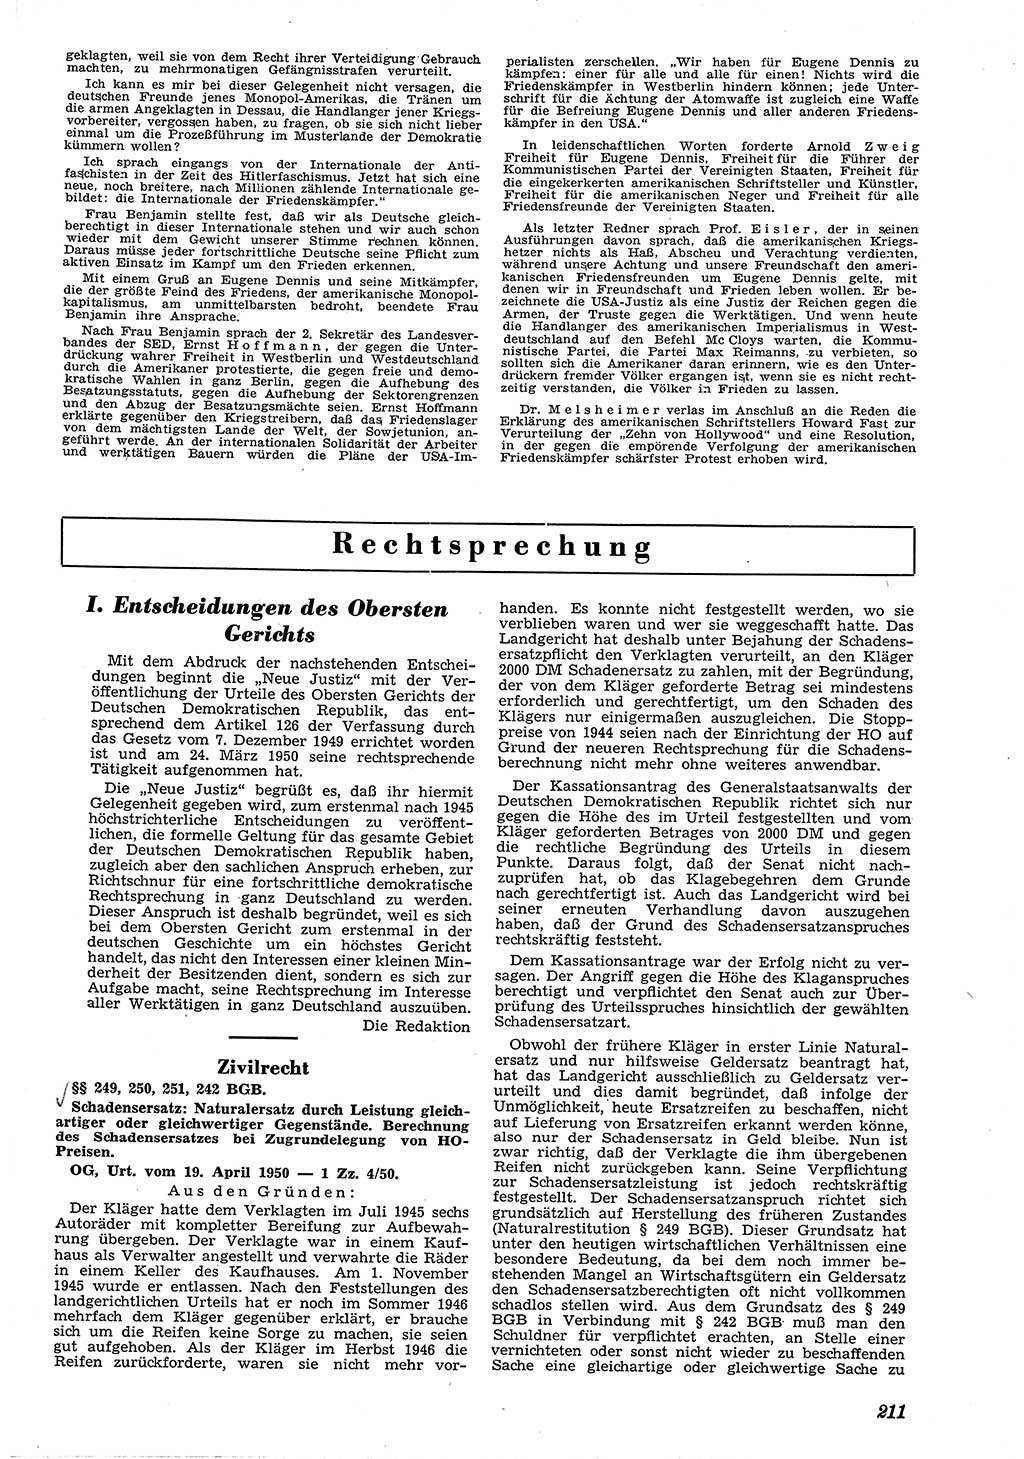 Neue Justiz (NJ), Zeitschrift für Recht und Rechtswissenschaft [Deutsche Demokratische Republik (DDR)], 4. Jahrgang 1950, Seite 211 (NJ DDR 1950, S. 211)